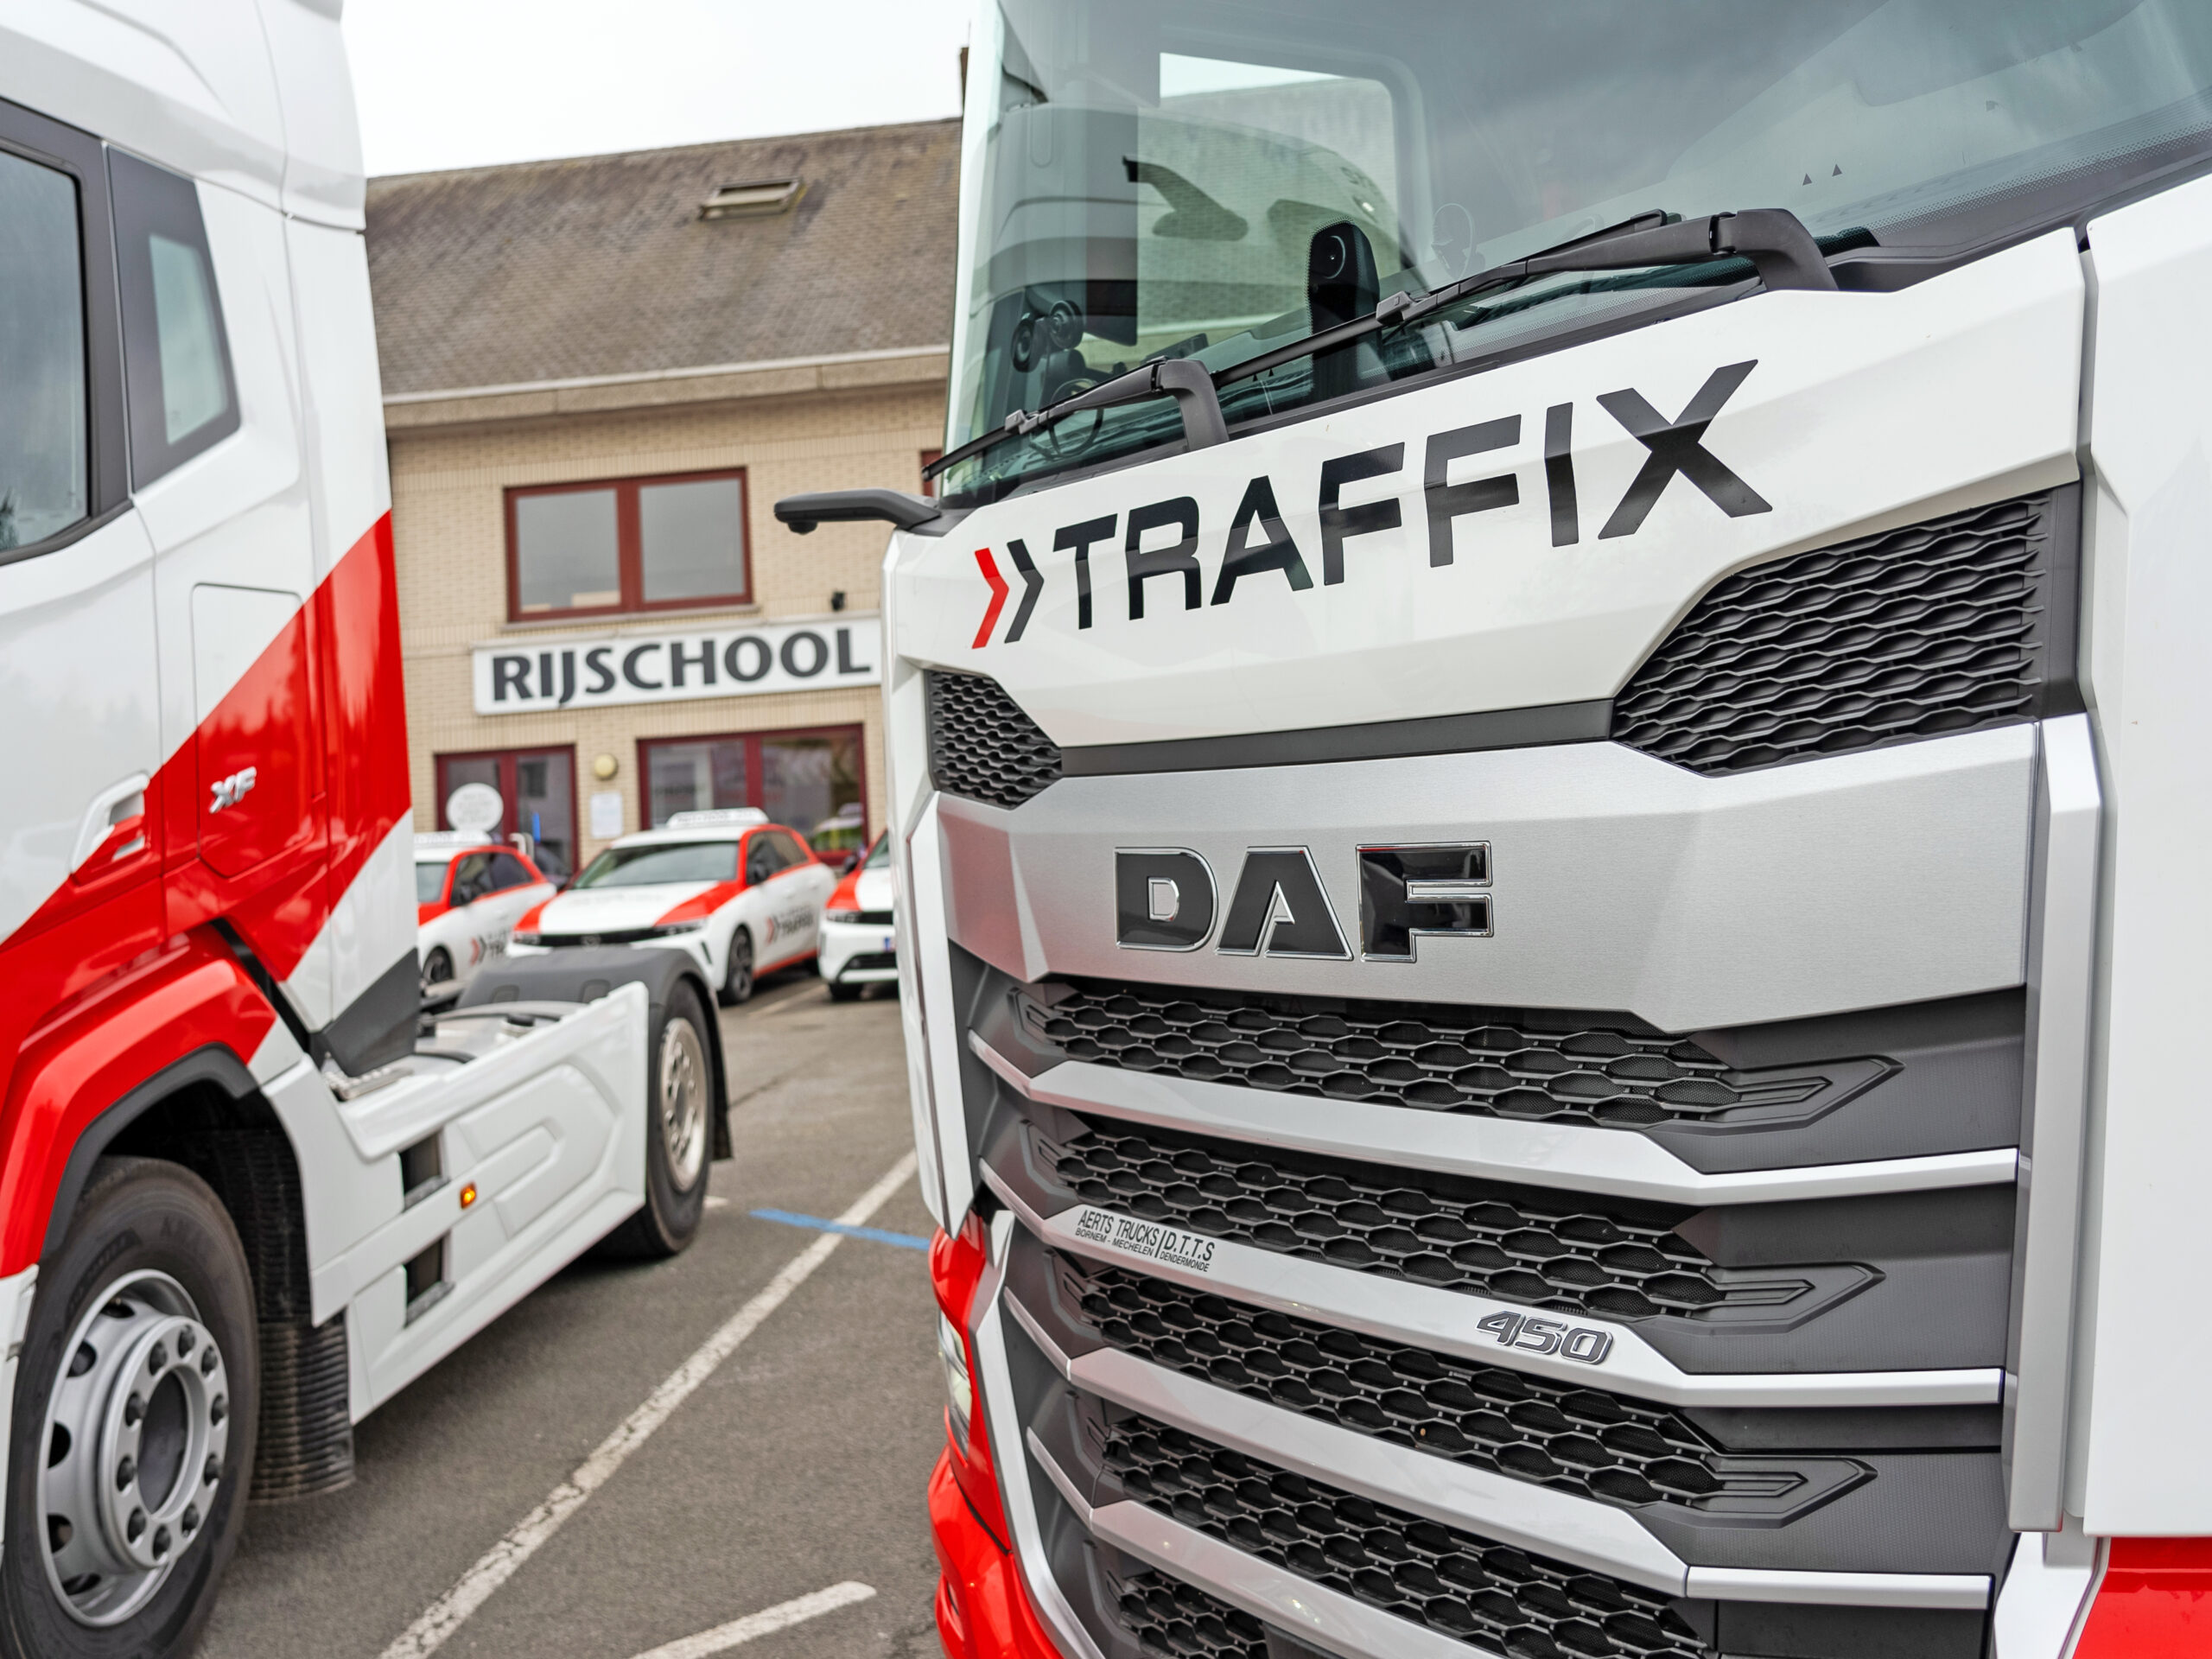 Rijschool Traffix investeert in ultramoderne DAF-vrachtwagens voor optimale rijopleidingen